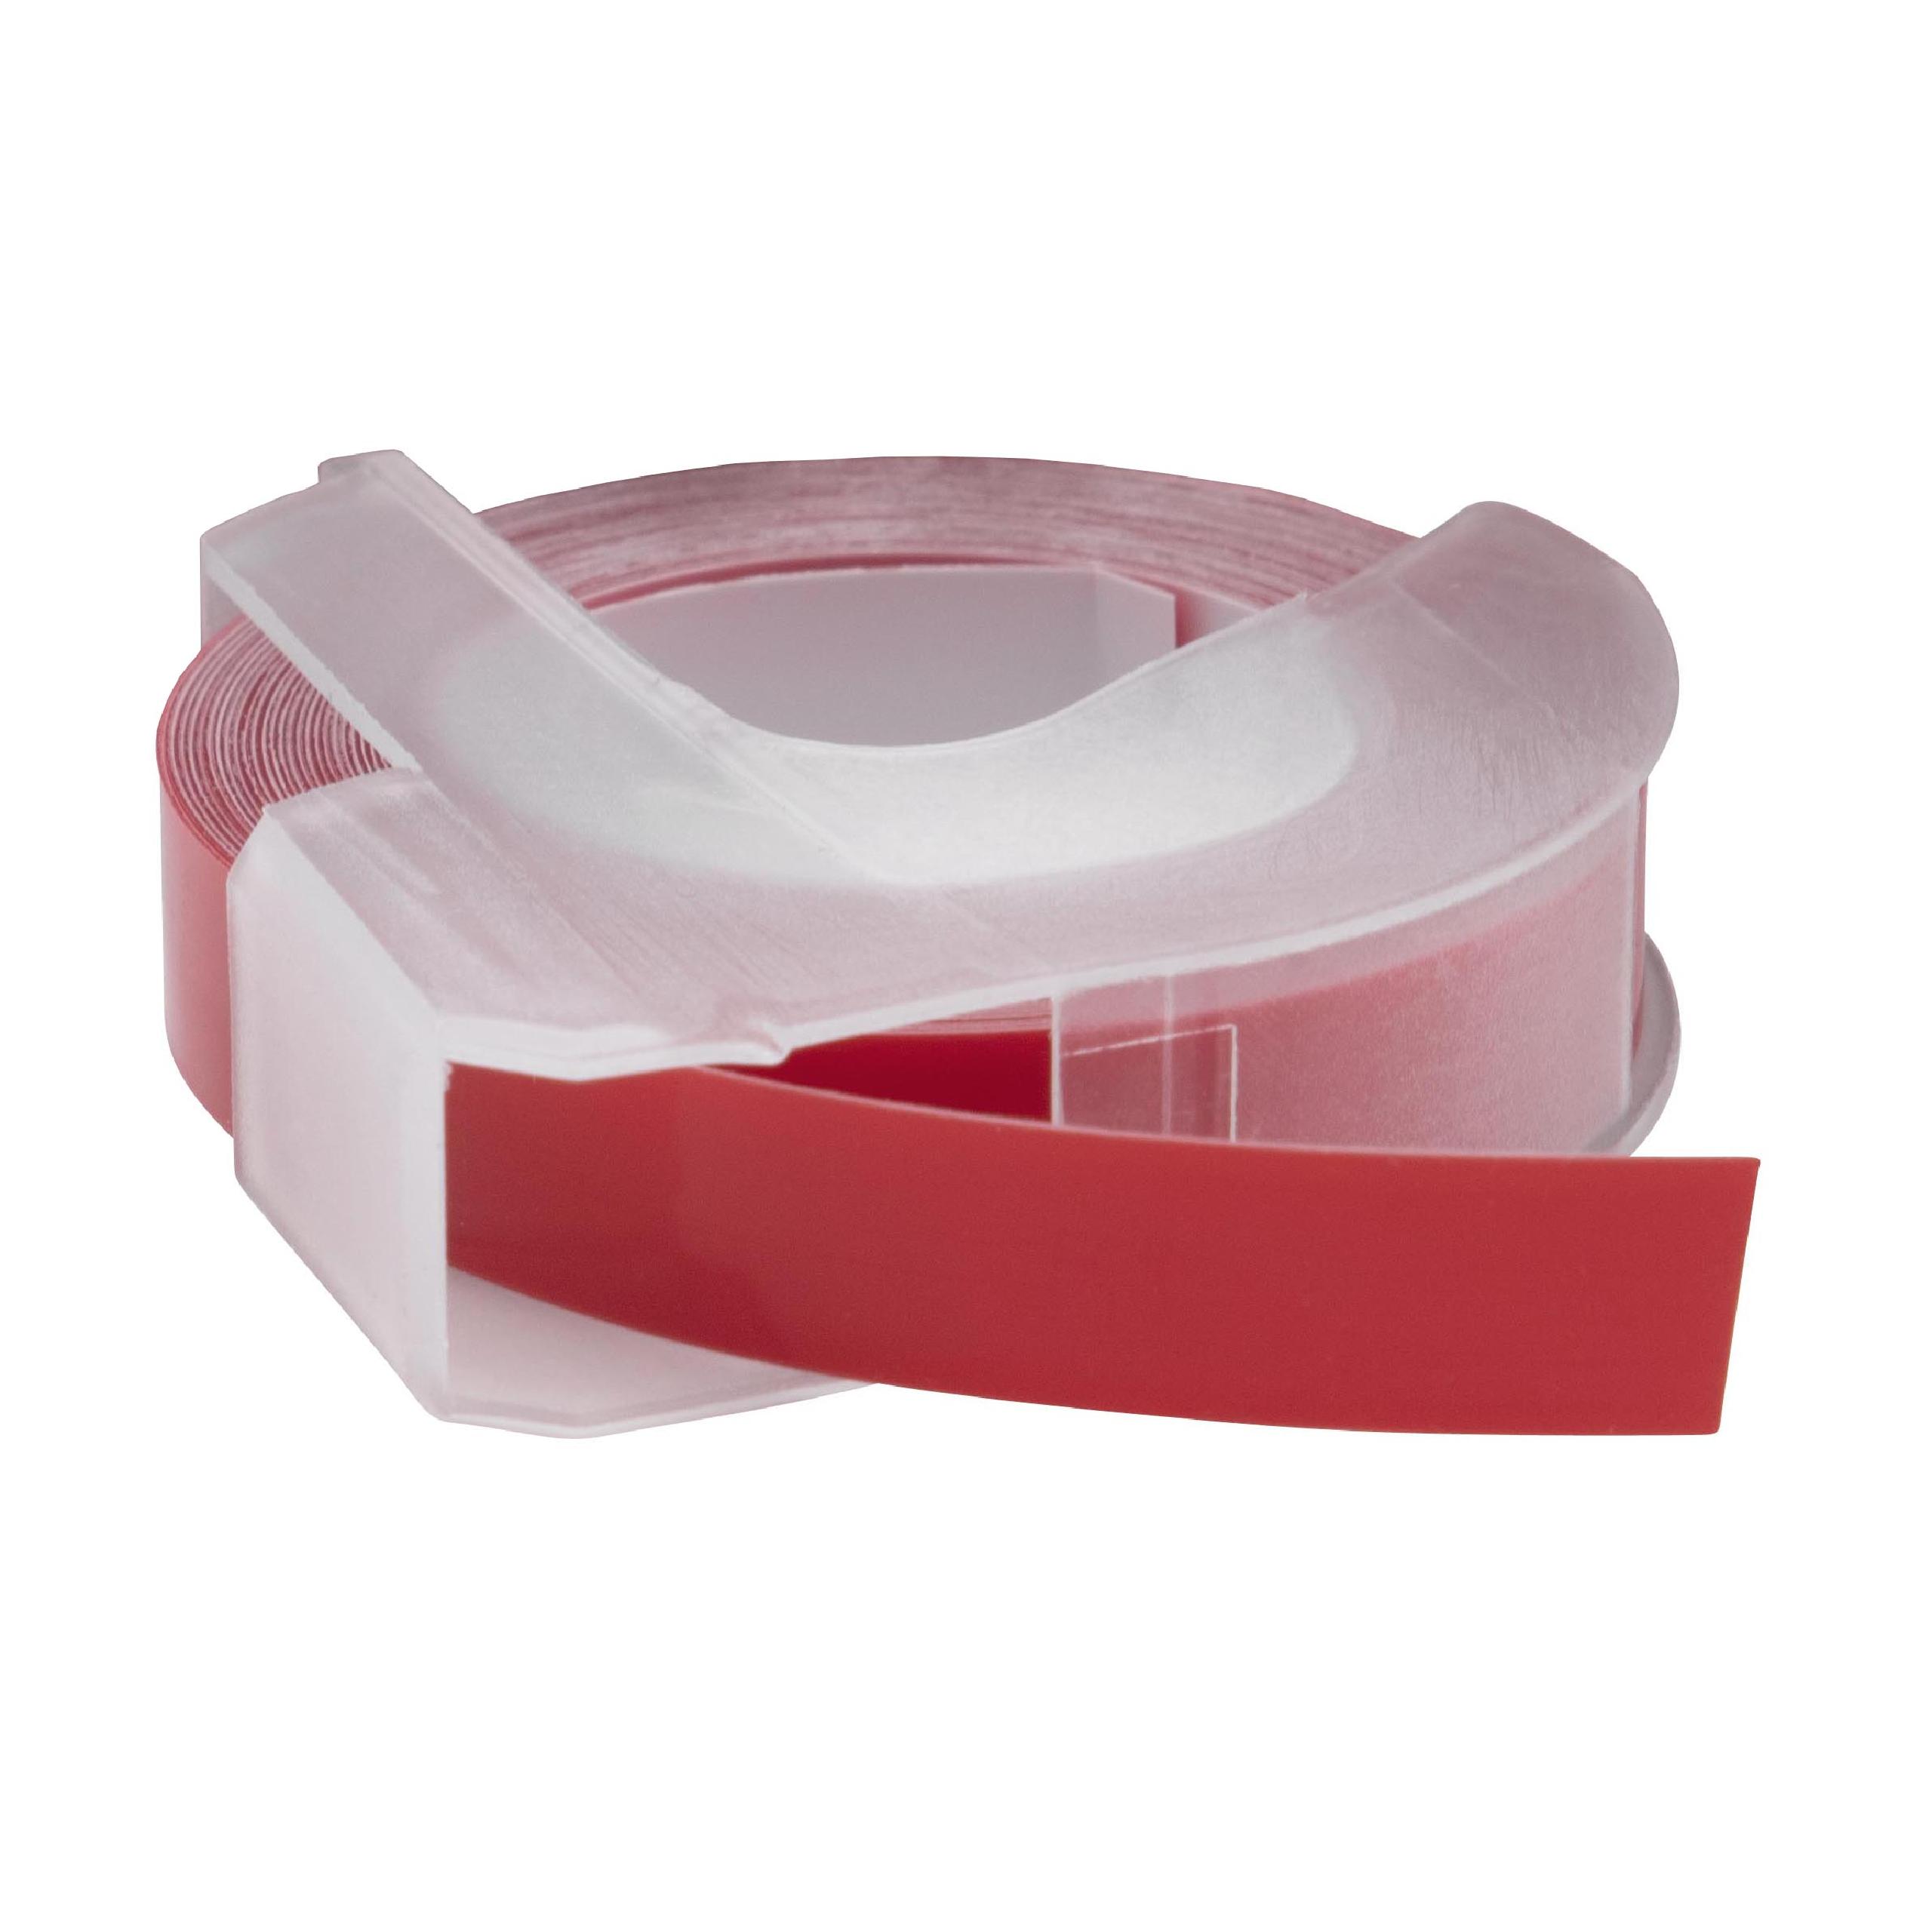 Casete cinta relieve 3D Casete cinta escritura reemplaza Dymo 520102, S0898150 Blanco su Rojo